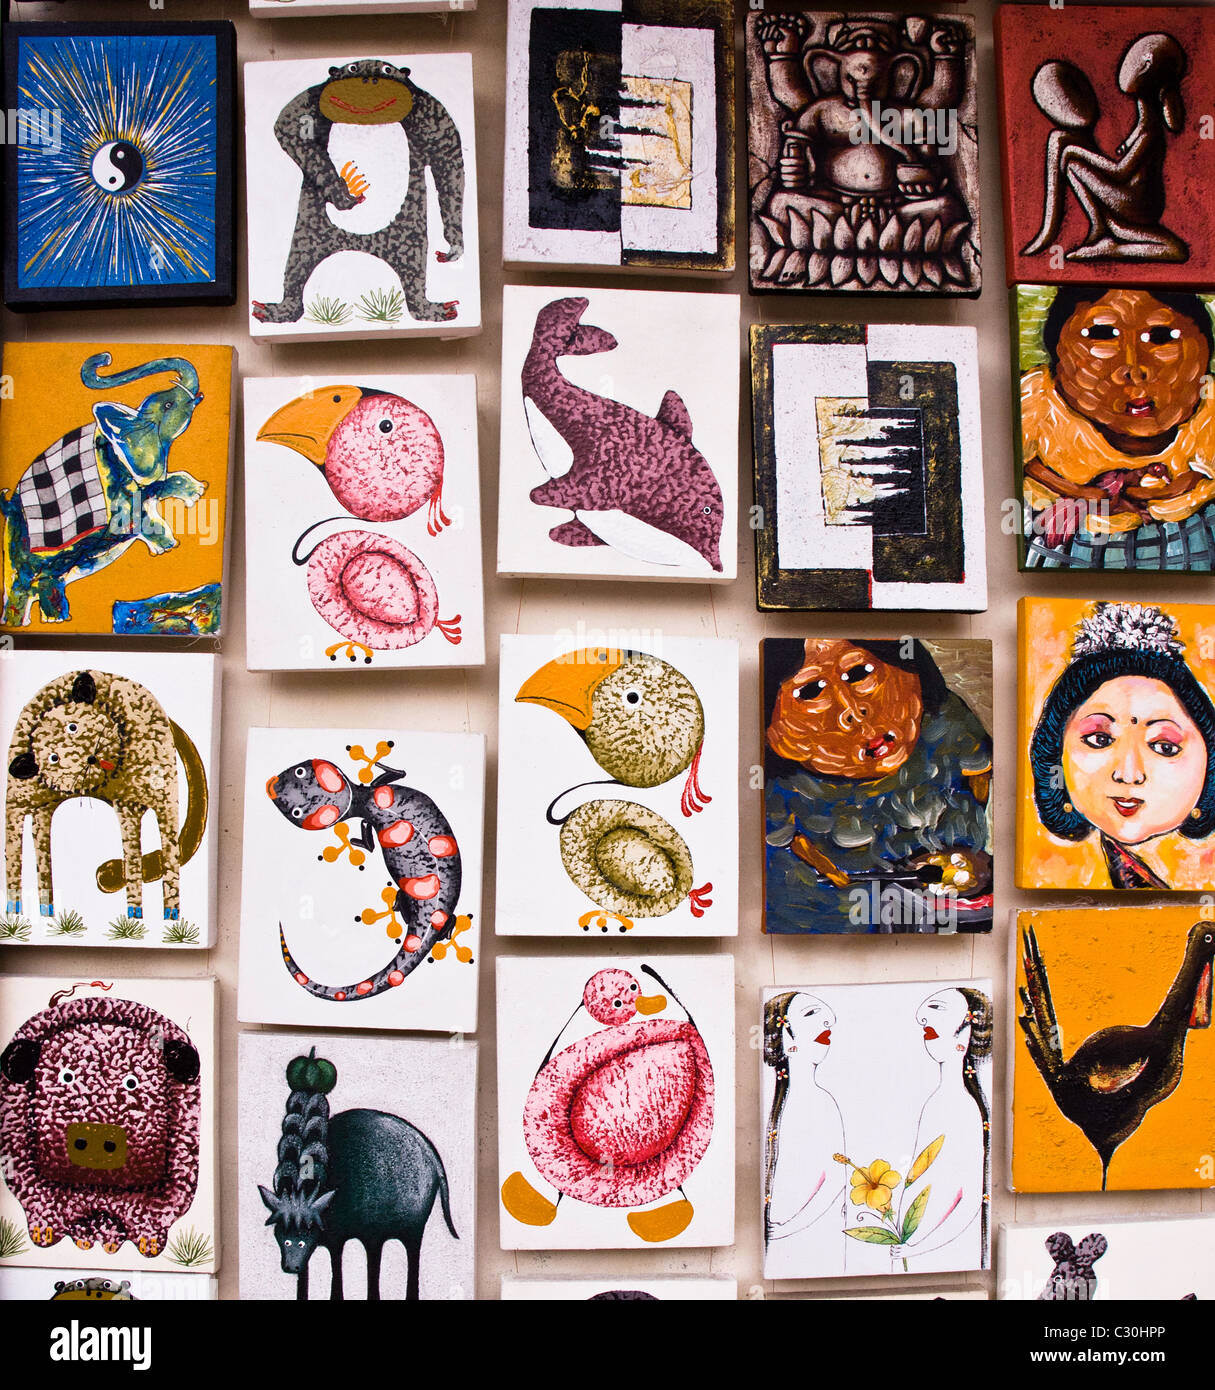 Foto di piccoli dipinti di artisti balinesi, visualizzato in arte negozi lungo le strade Foto Stock